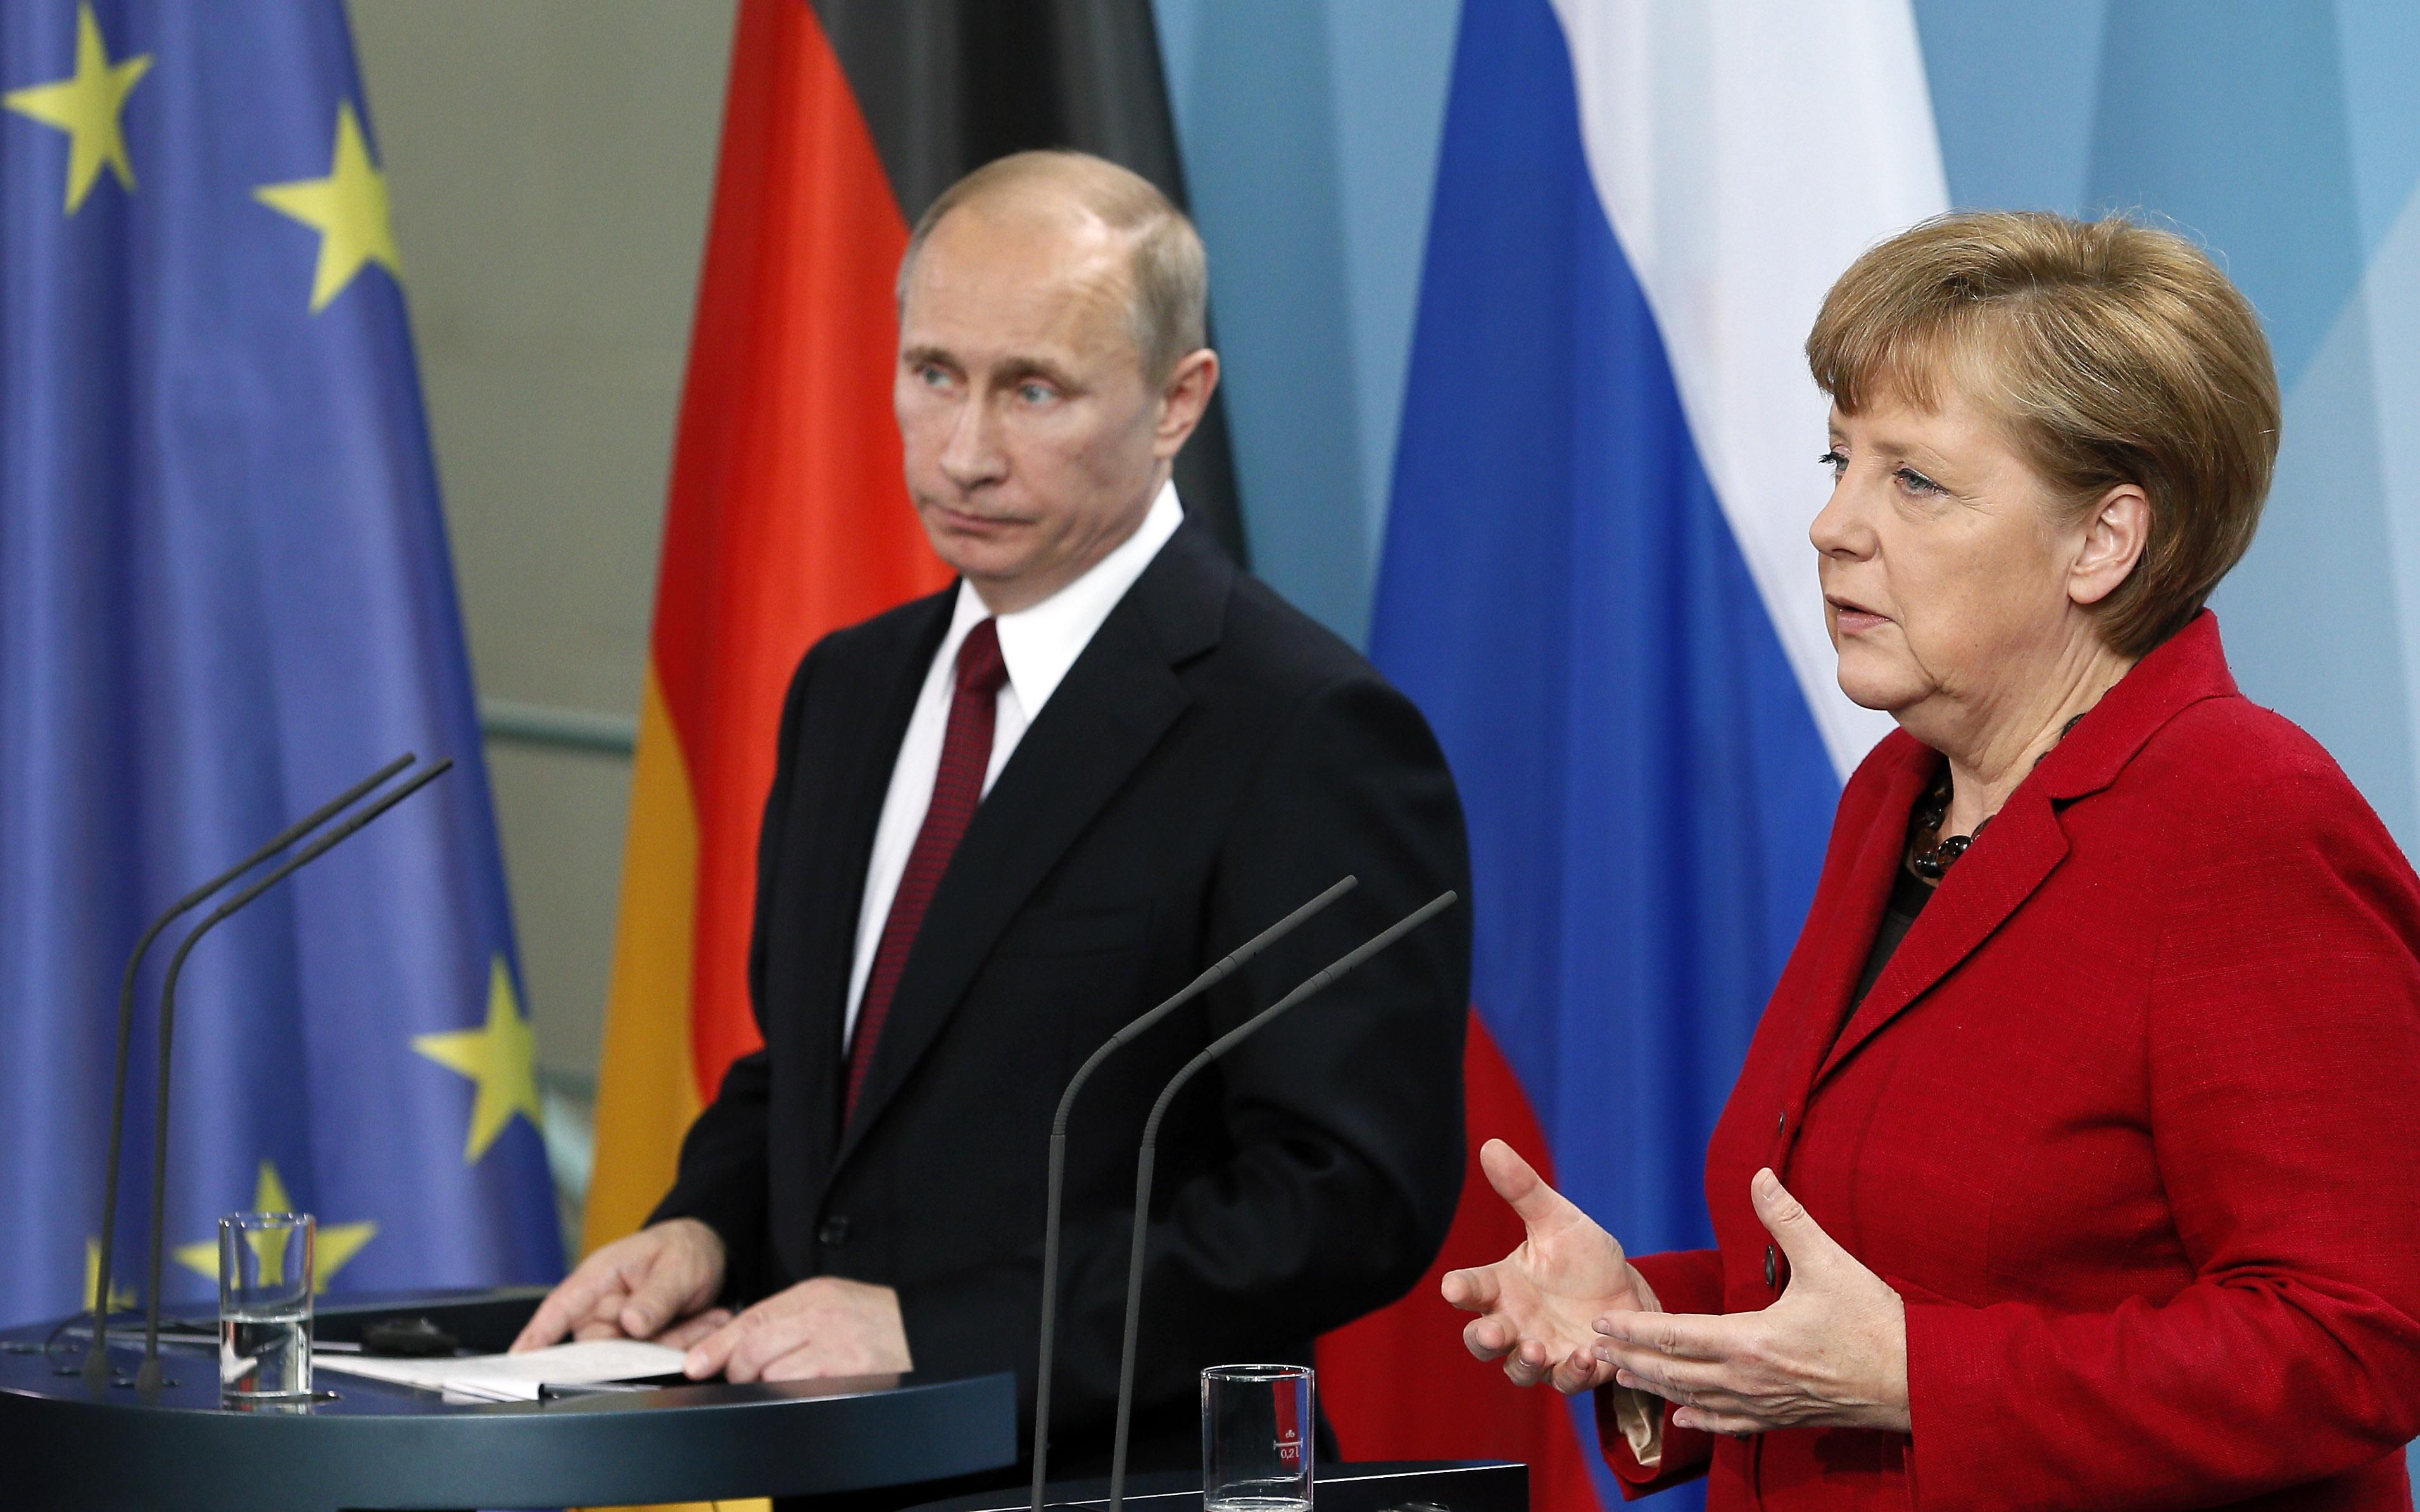 Результат поїздки Меркель до Путіна розчаровує, – Der Spiegel